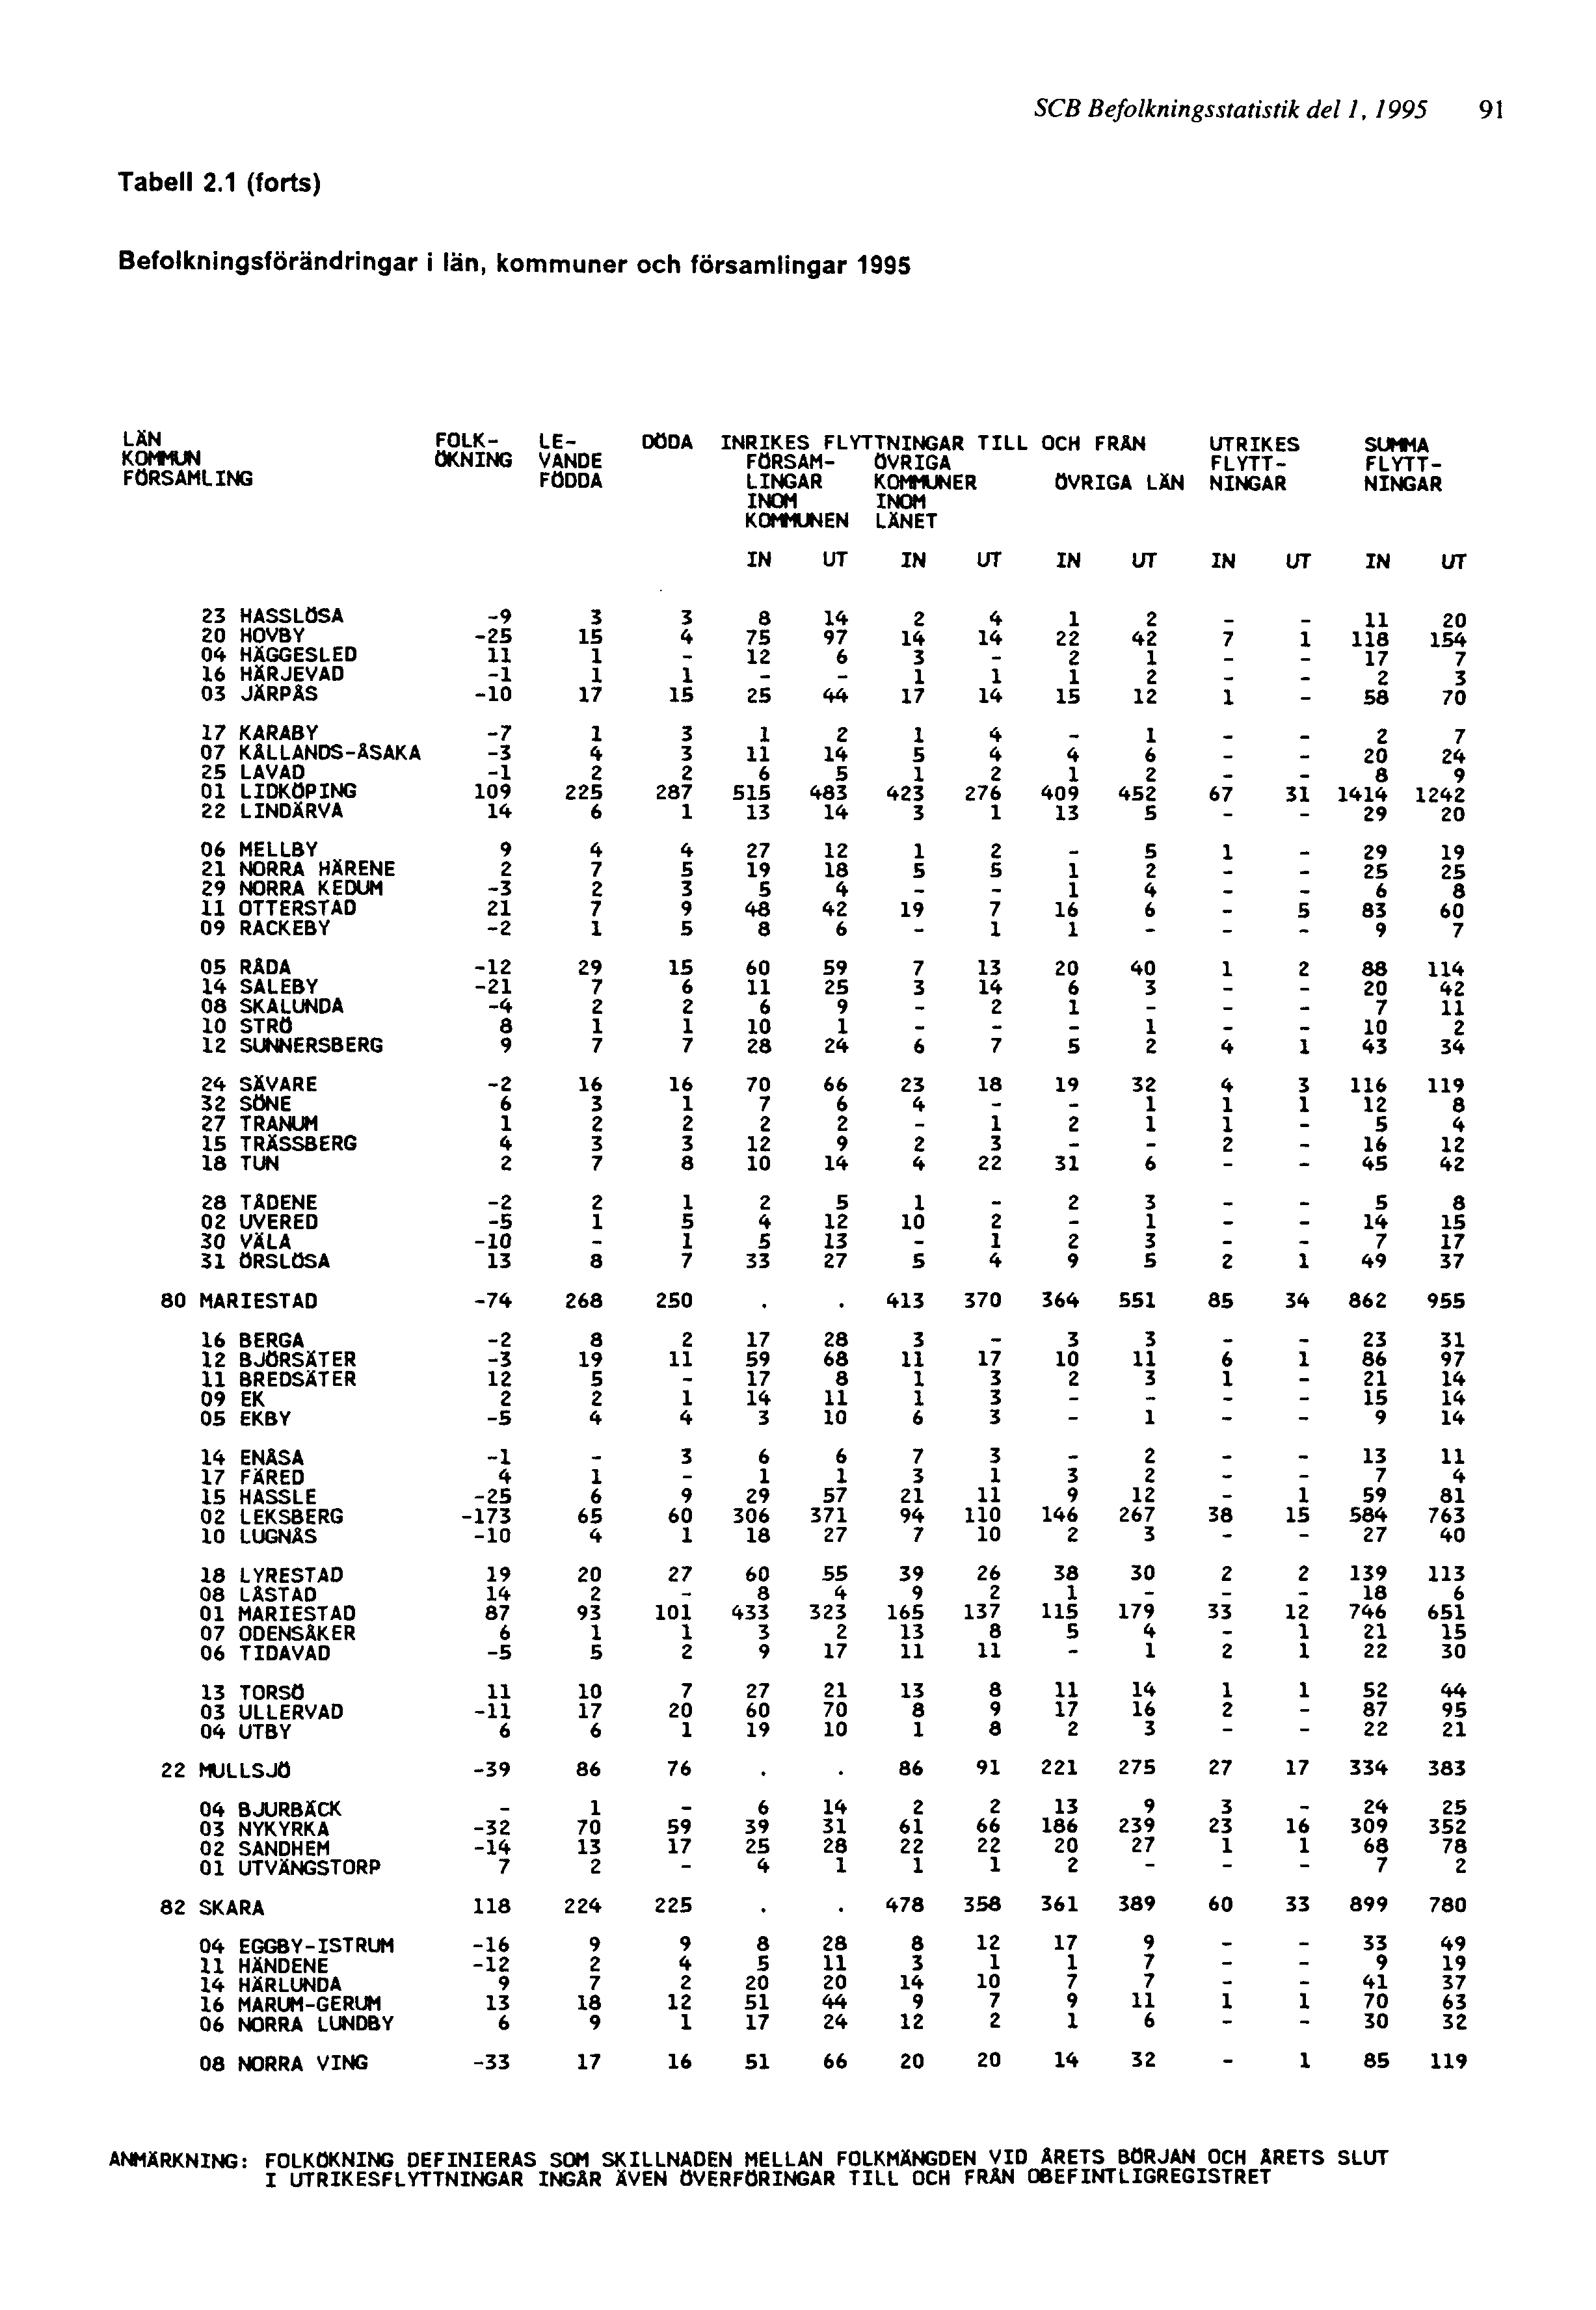 SCB Befolkningsstatistik del 1, 1995 91 ANMÄRKNING: FOLKÖKNING DEFINIERAS SOM SKILLNADEN MELLAN FOLKMÄNGDEN